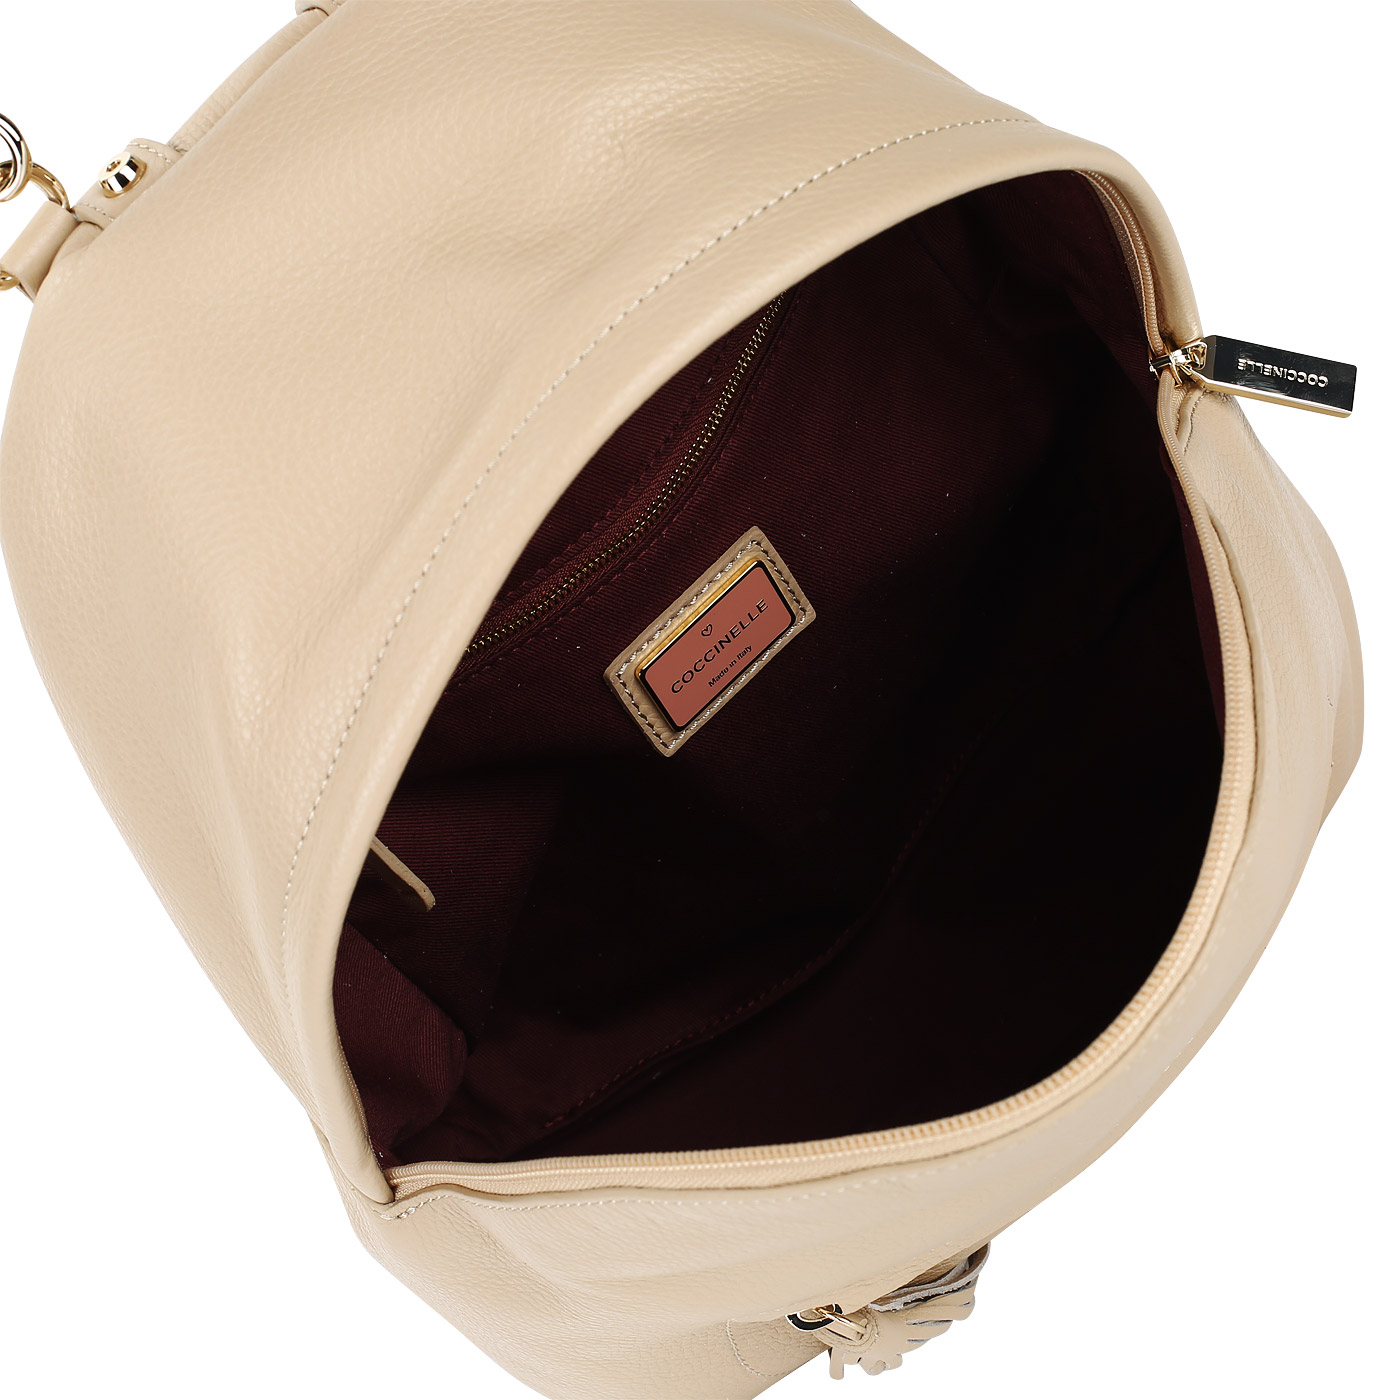 Женский кожаный рюкзак с регулируемыми лямками Coccinelle Leonie